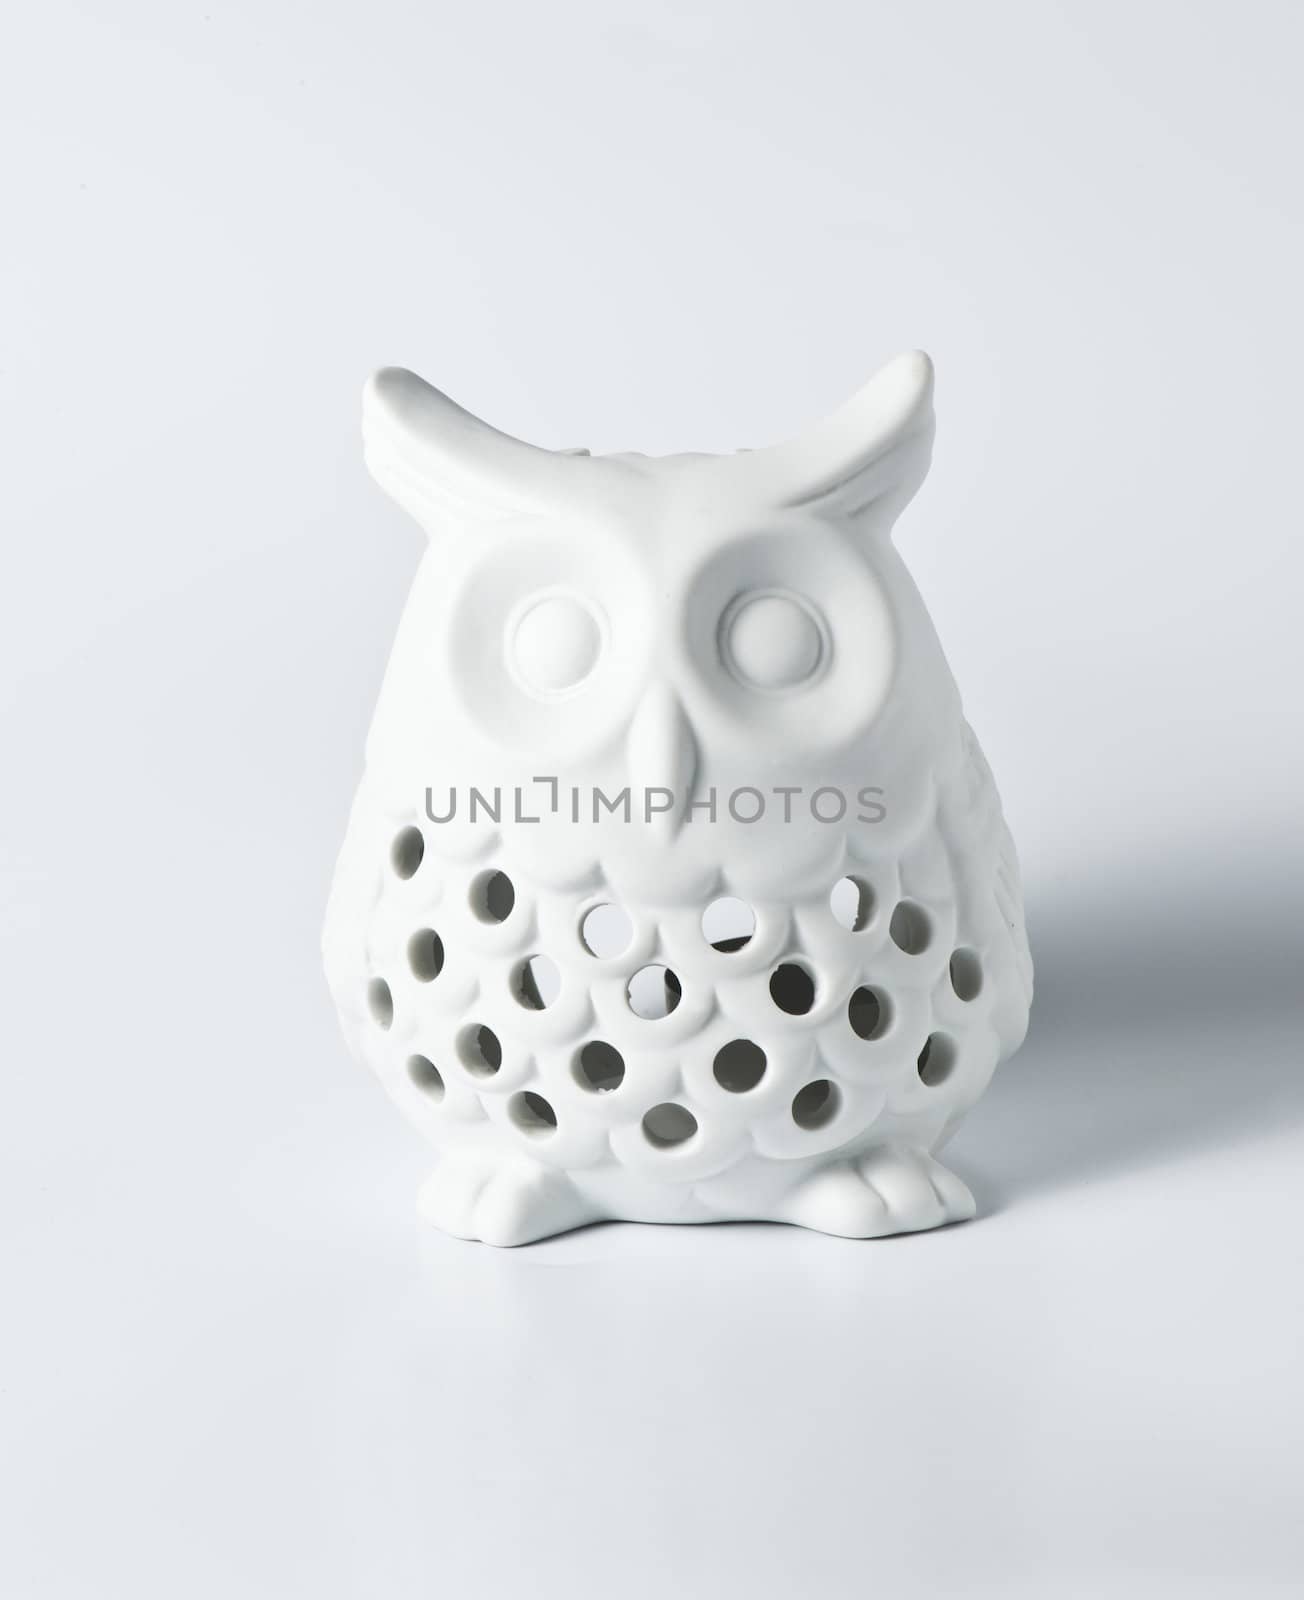 White ceramic owl for decoration on white